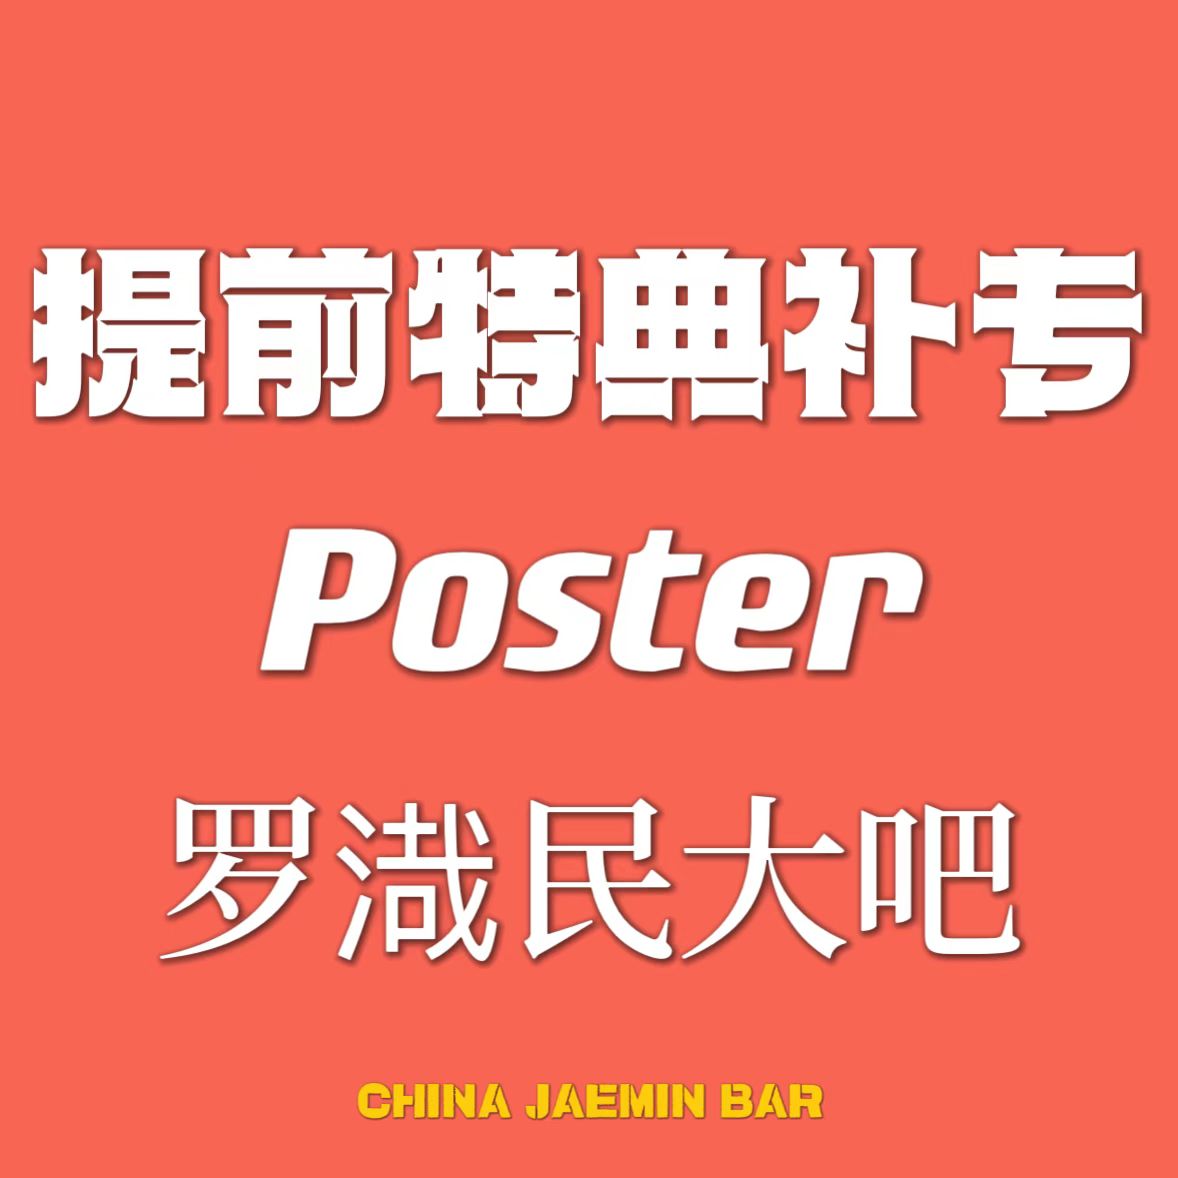 [全款 提前特典补专] NCT DREAM - 正规3辑 [ISTJ] (Poster Ver.) (随机版本)_罗渽民吧